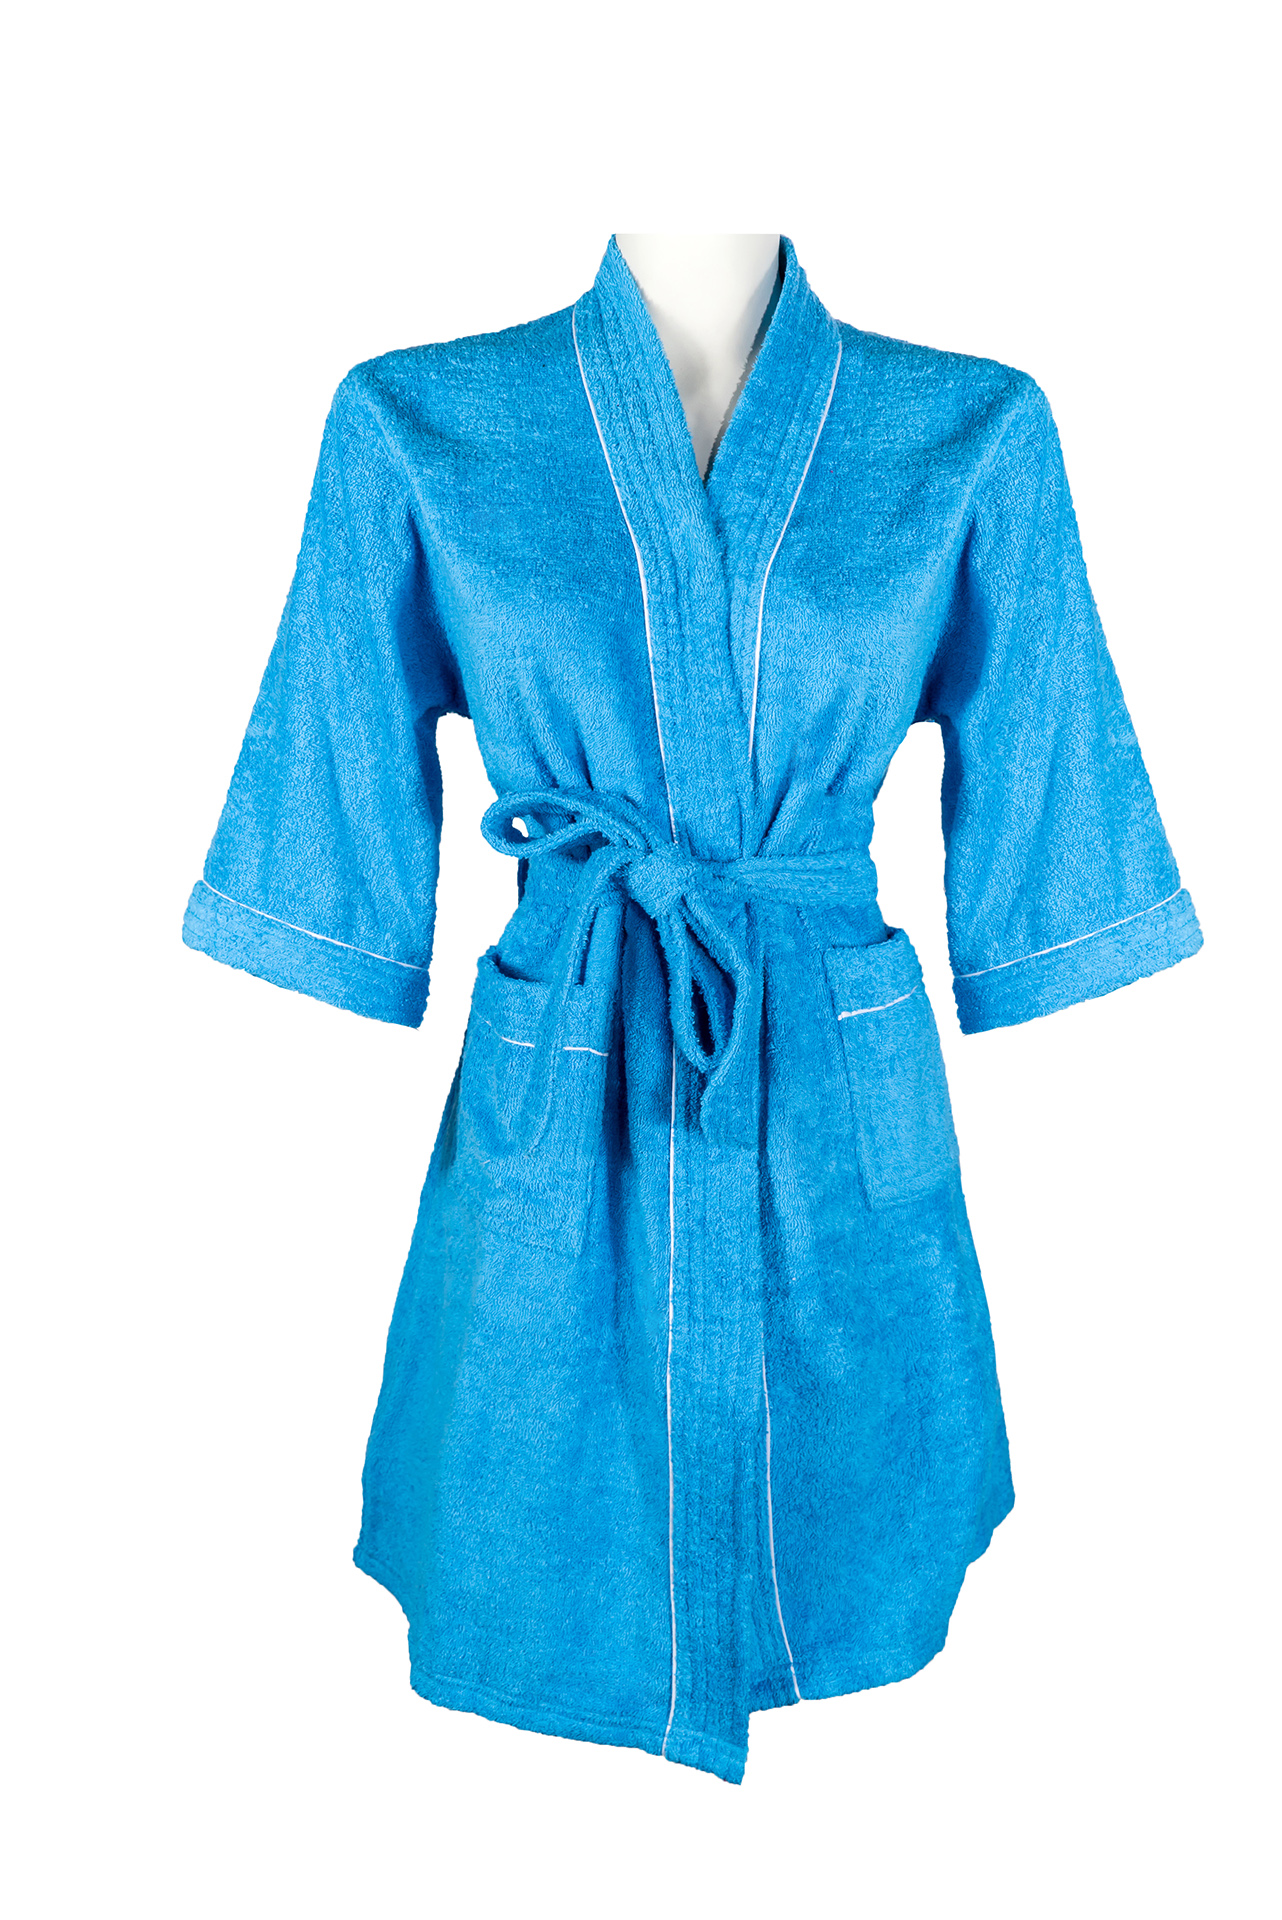 XFYJR Bata de baño cálida para mujer, talla grande, bata de baño con  capucha y bolsillos (color: gris, talla: XXL)